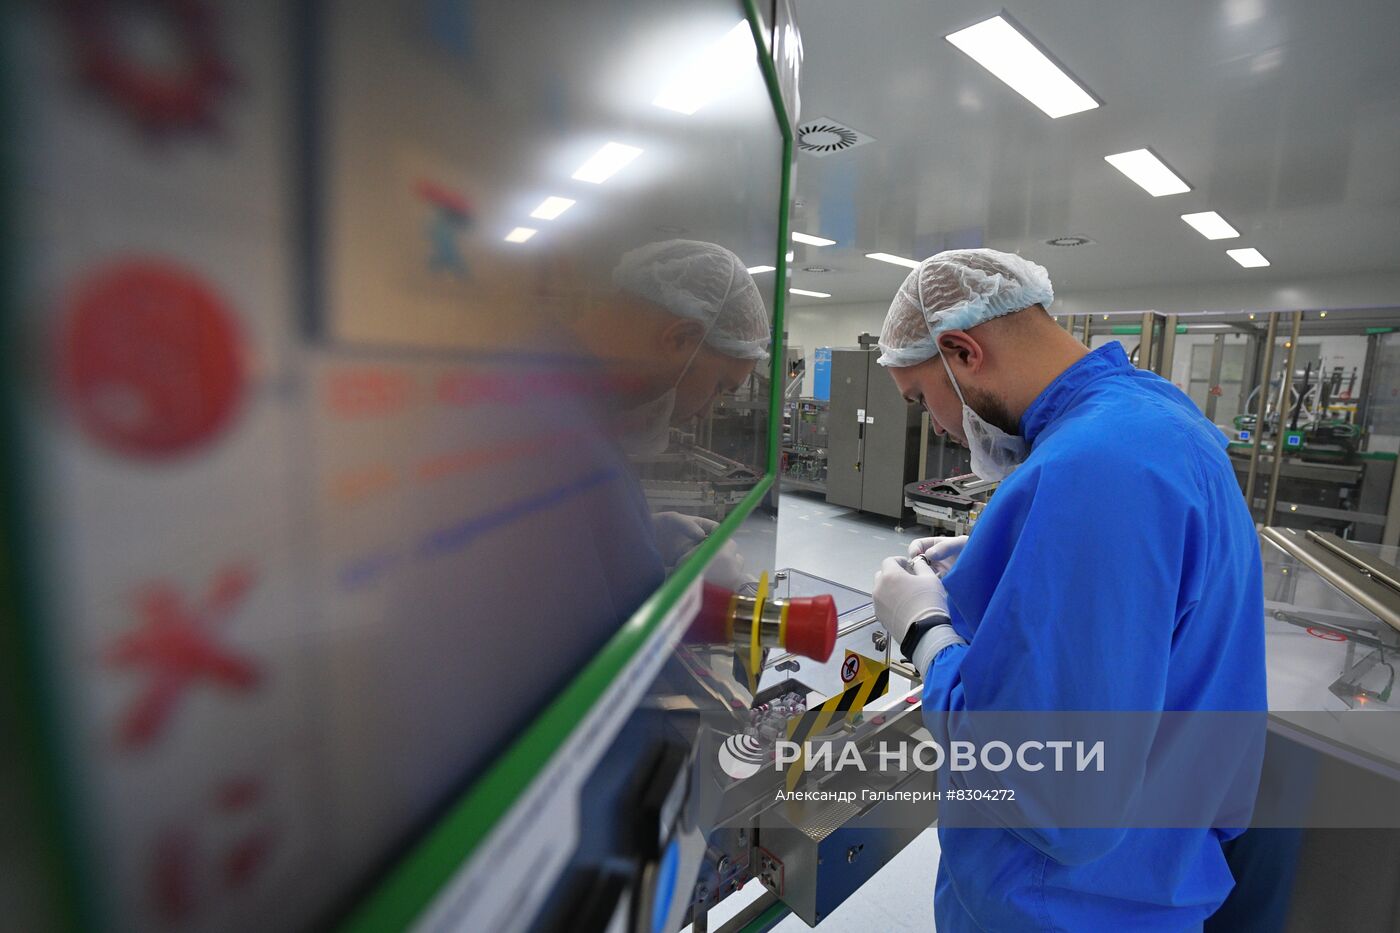 Производство лекарственных препаратов в компании BIOCAD в Санкт-Петербурге